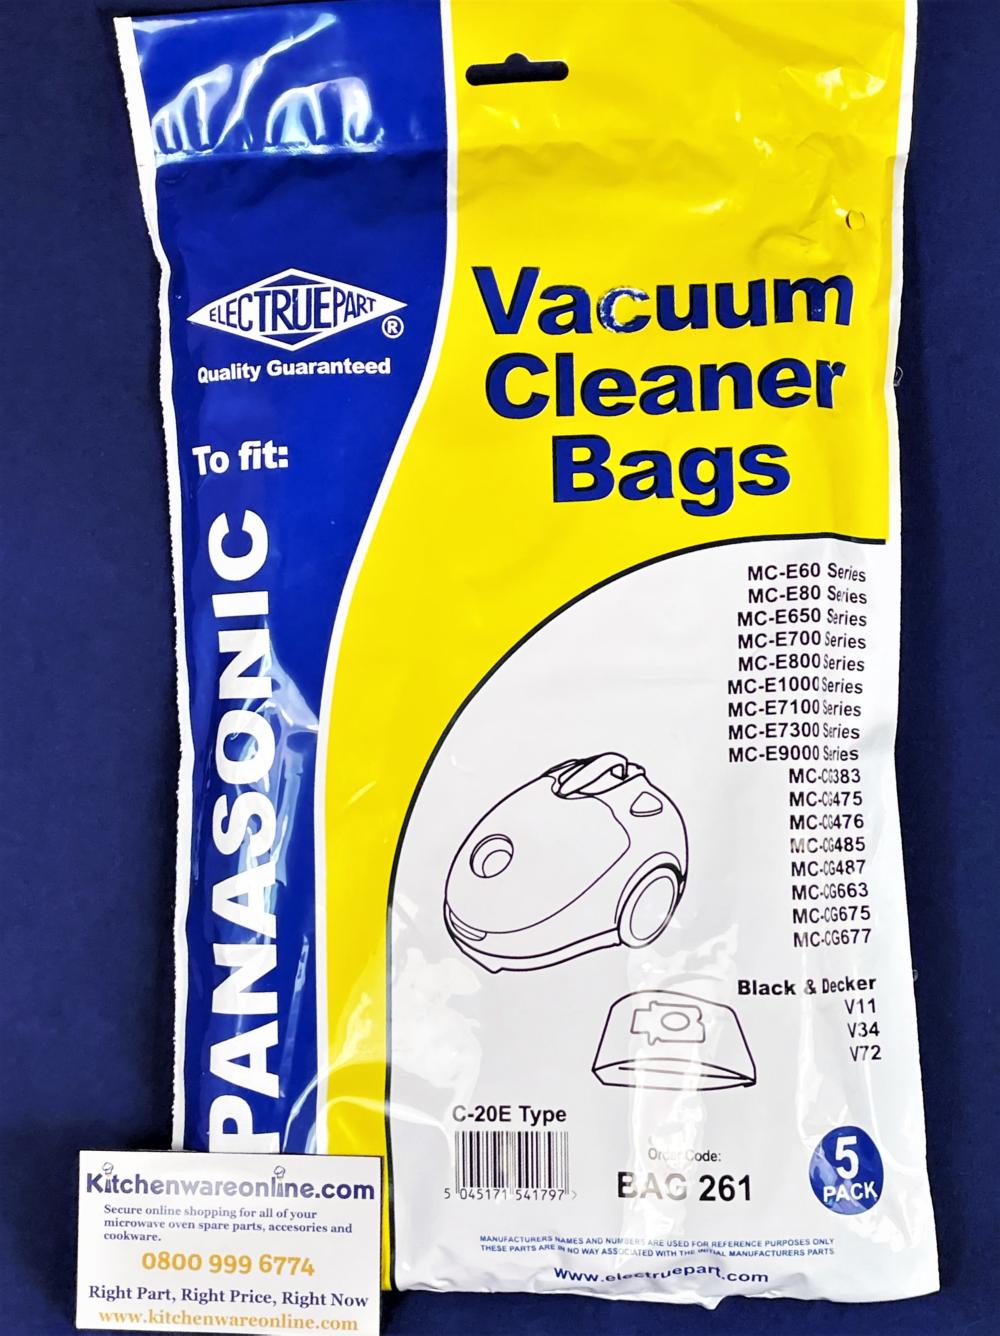 Panasonic Vacuum Cleaner Bags 5 pack